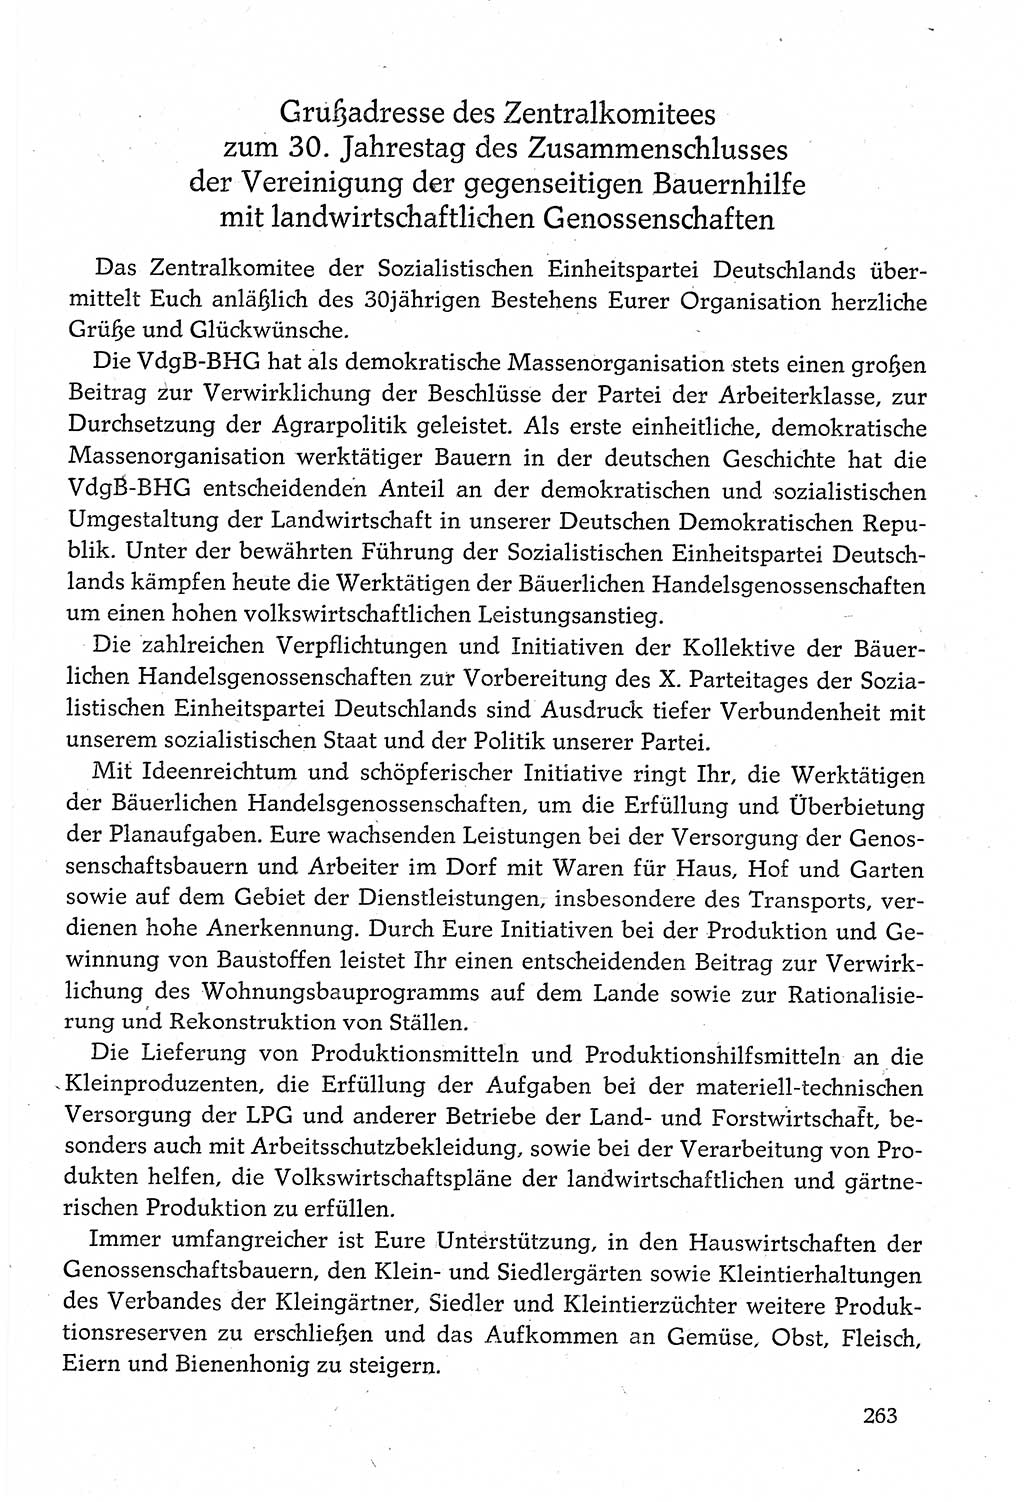 Dokumente der Sozialistischen Einheitspartei Deutschlands (SED) [Deutsche Demokratische Republik (DDR)] 1980-1981, Seite 263 (Dok. SED DDR 1980-1981, S. 263)